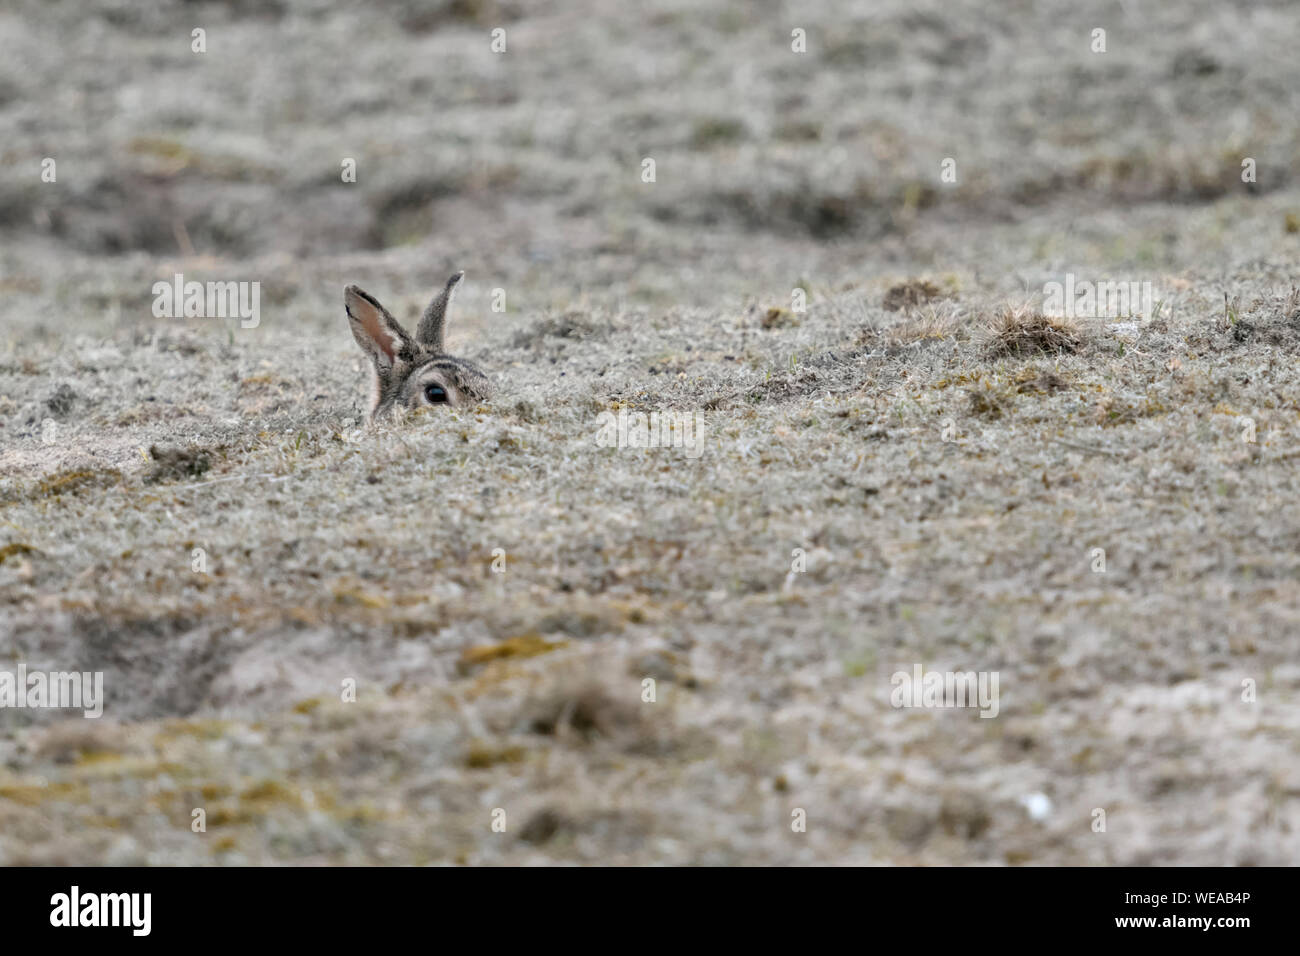 Europäische Kaninchen/Wildkaninchen (Oryctolagus cuniculus) sitzen in Rabbit Hole, sorgfältig beobachten, spähen aus seiner Burrow, lustige Blicke, die Tier- und Pflanzenwelt Stockfoto